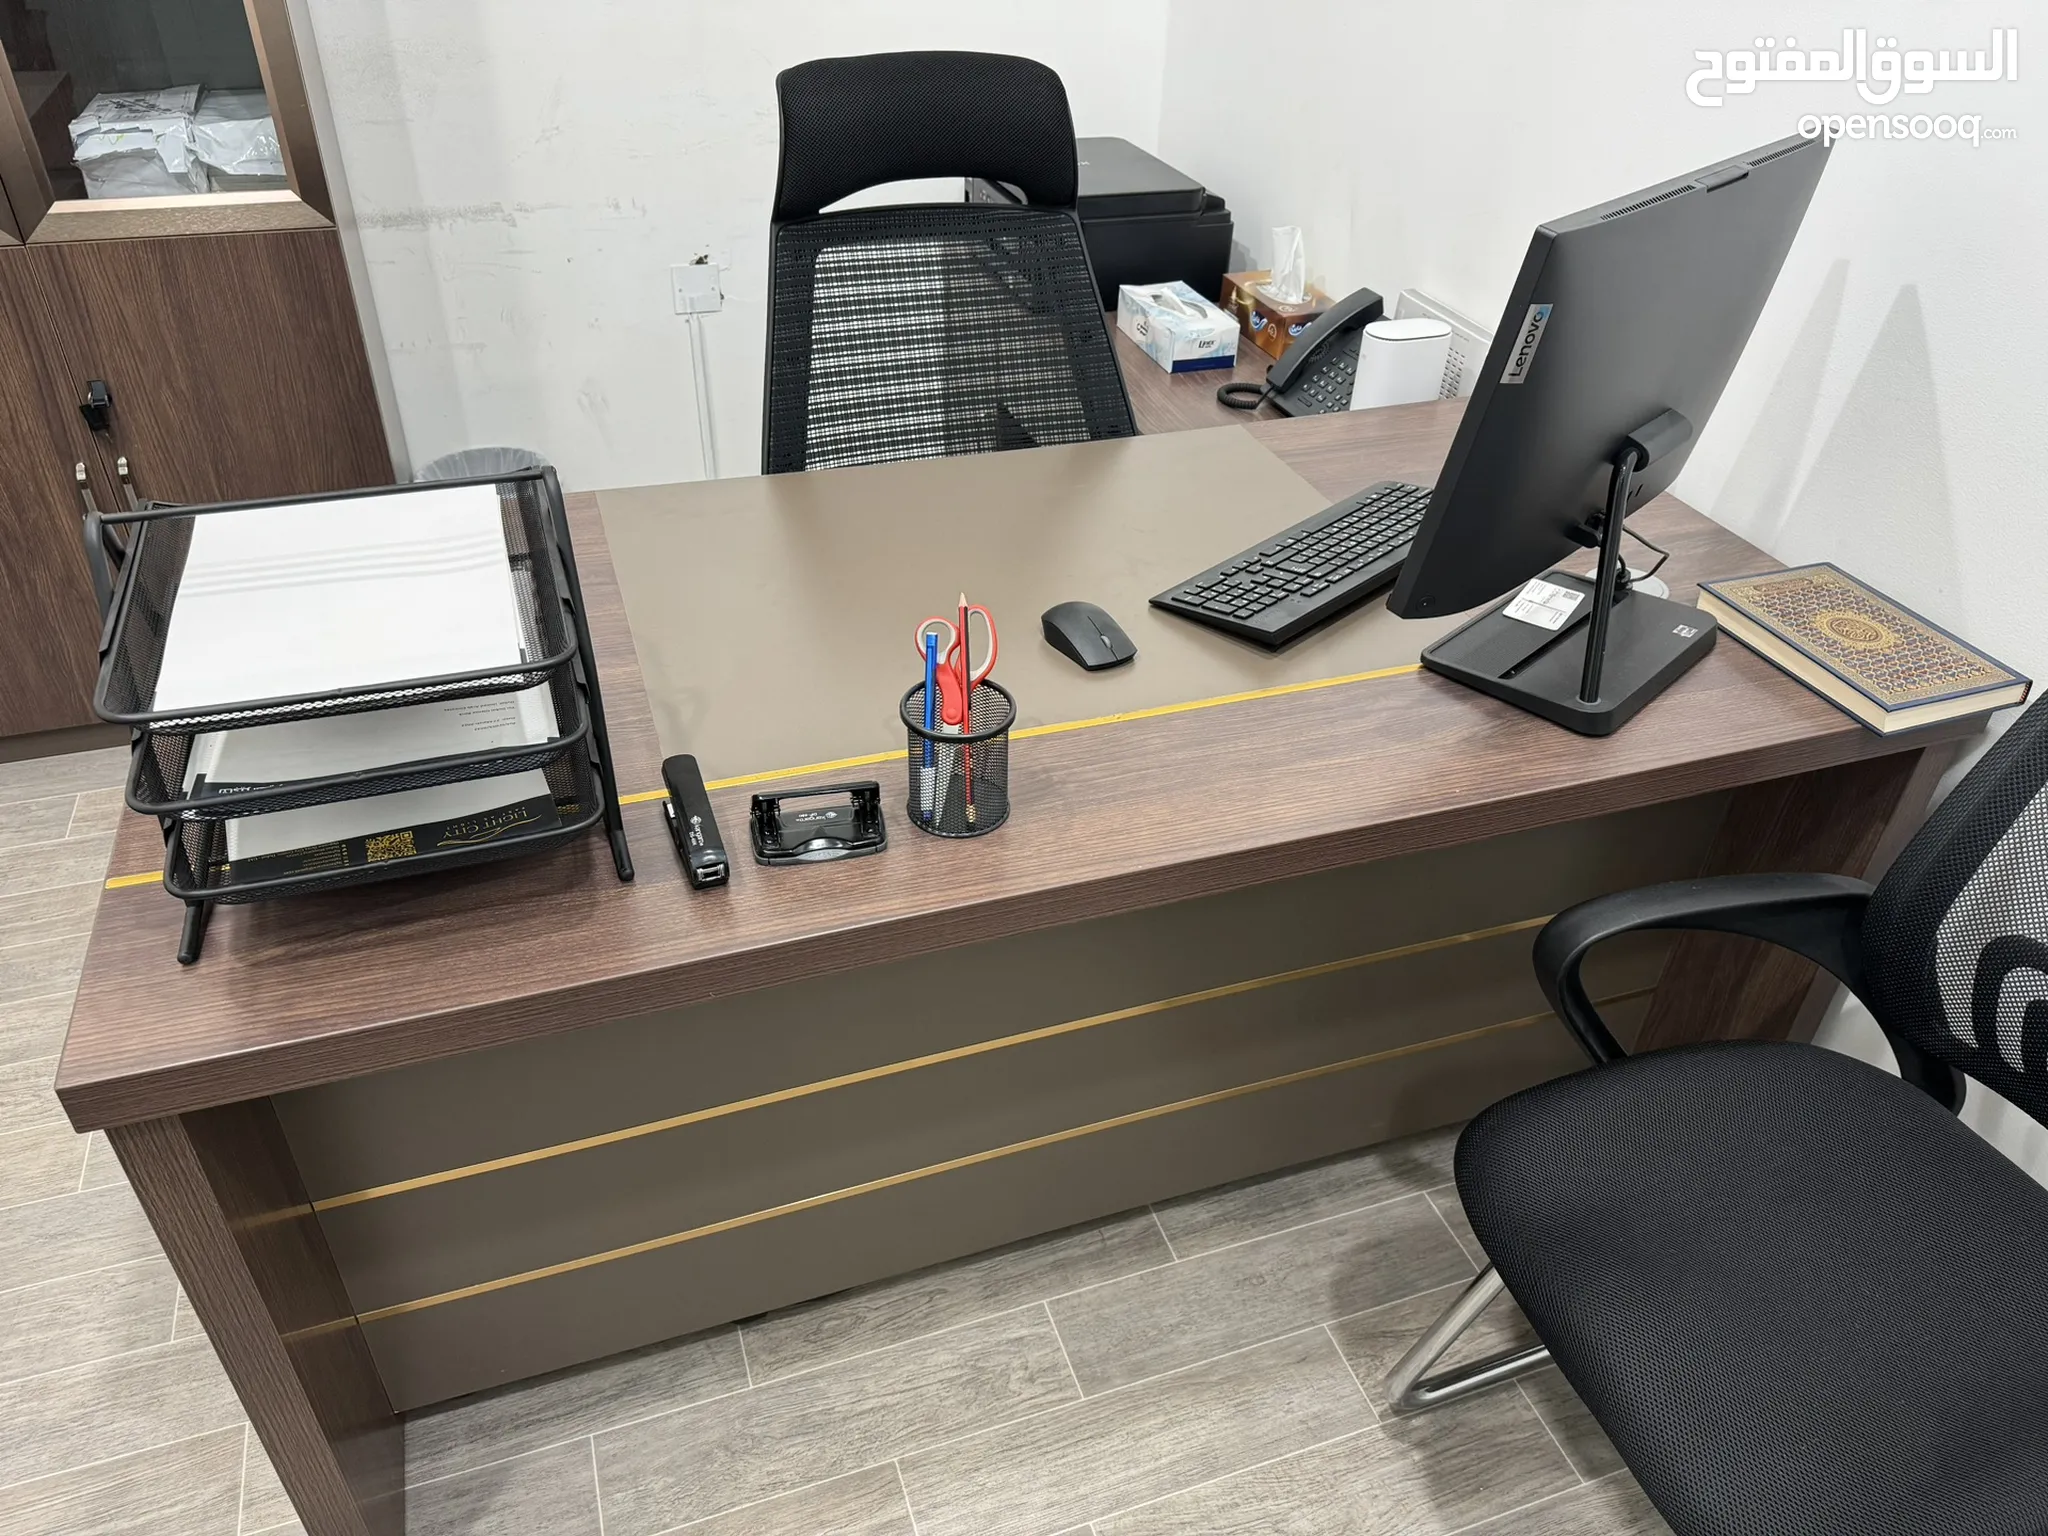 اثاث مكاتب للبيع : اثاث مكتبي : طاولات وكراسي : ارخص الاسعار في الإمارات |  السوق المفتوح